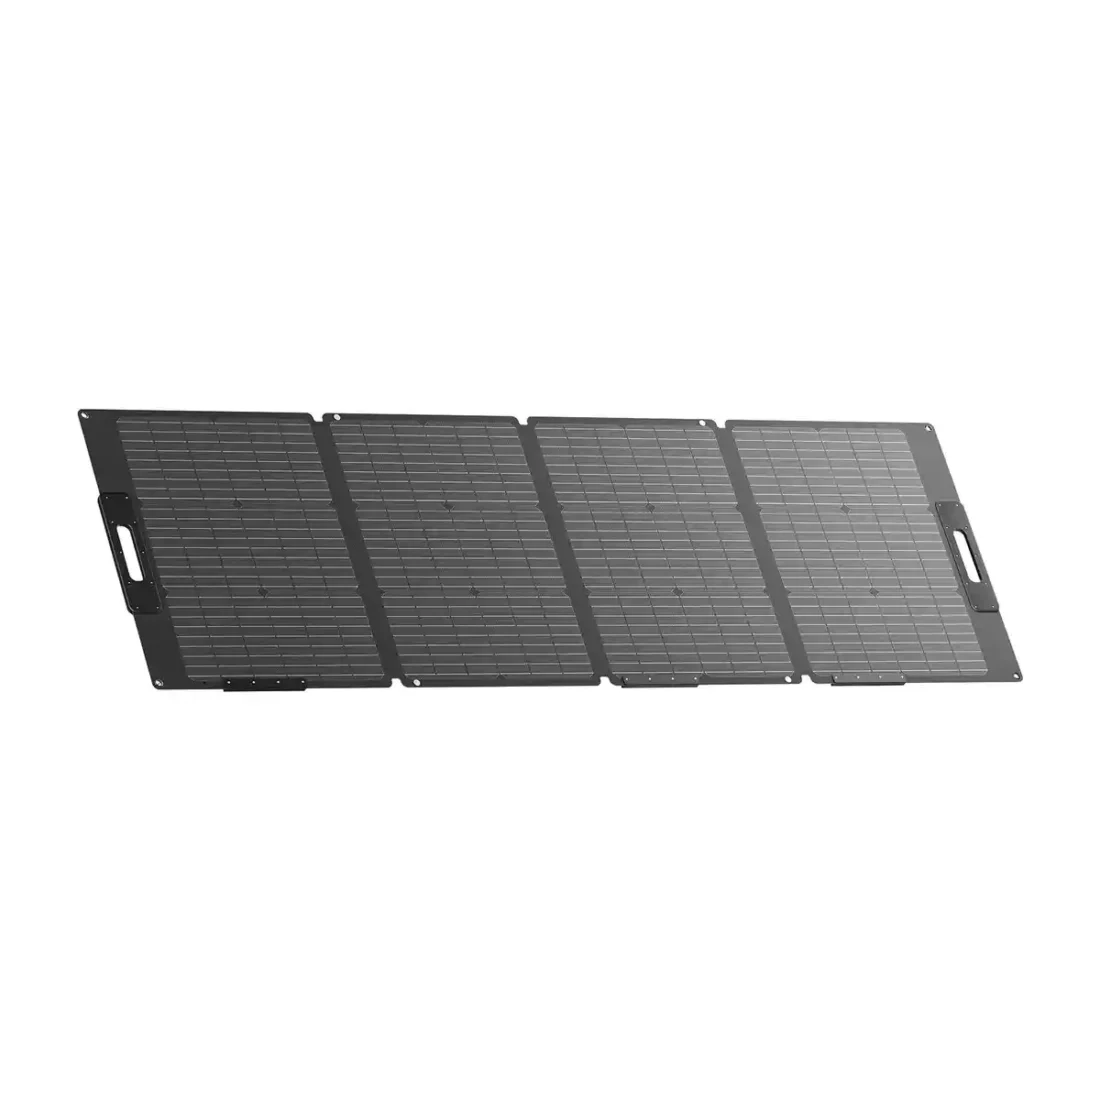 Bluetti PV120S 120W Solar Panel